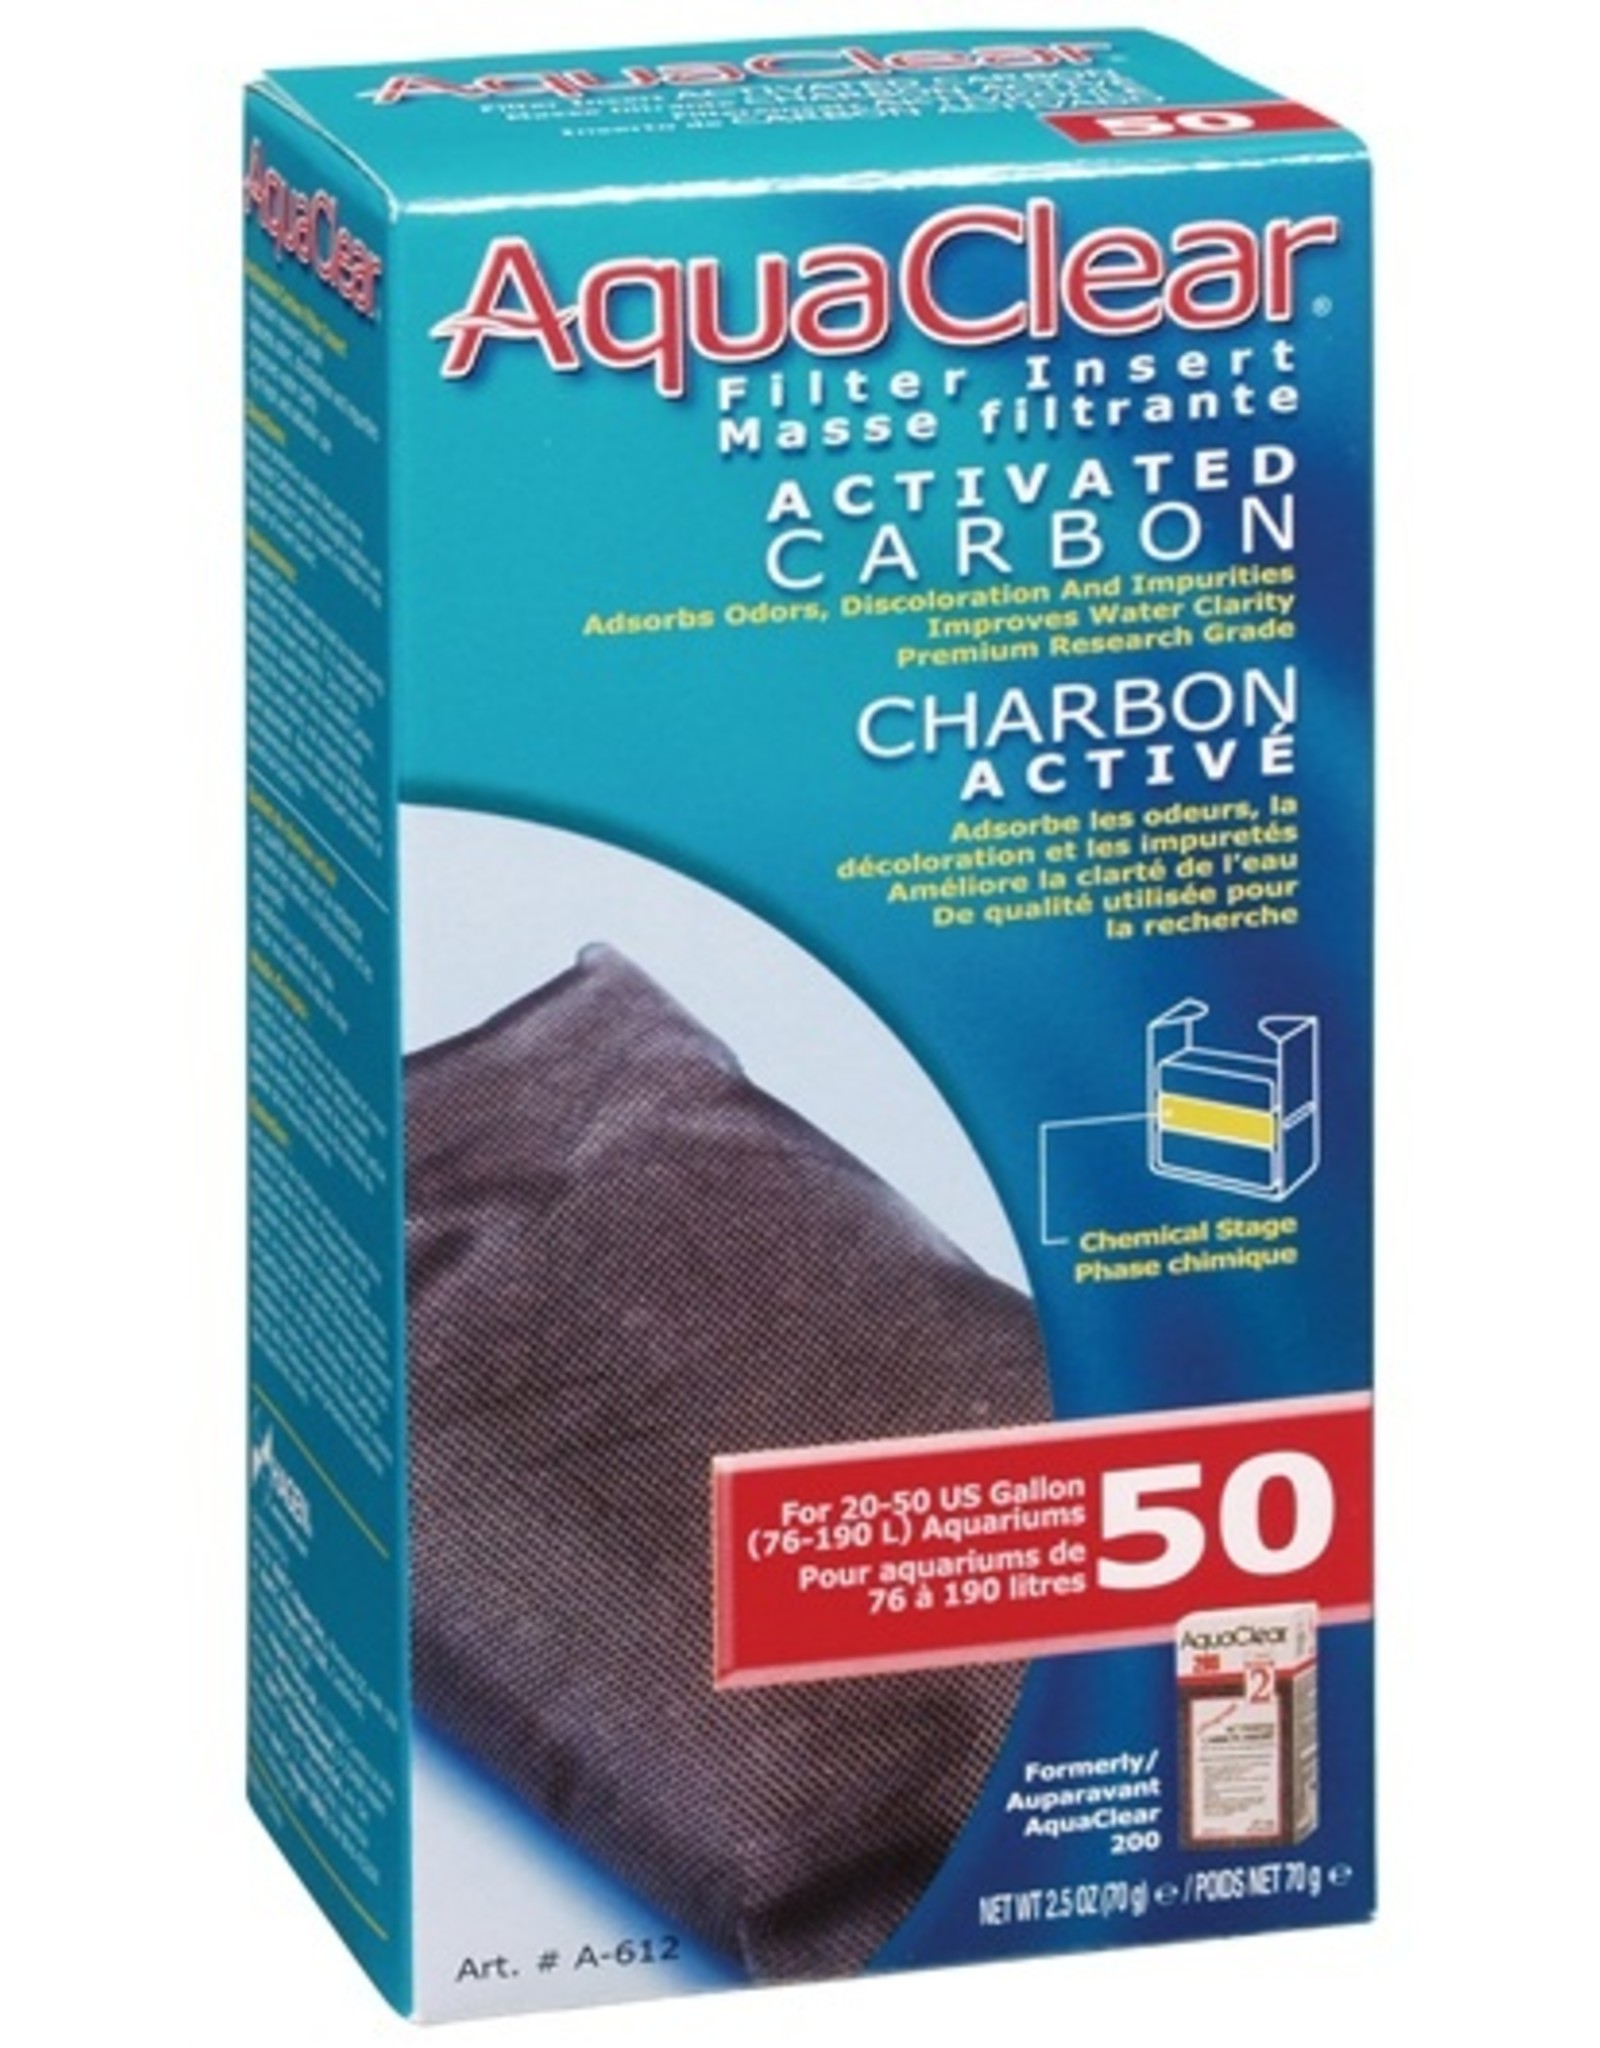 Aquaclear AQUACLEAR Carbon Insert